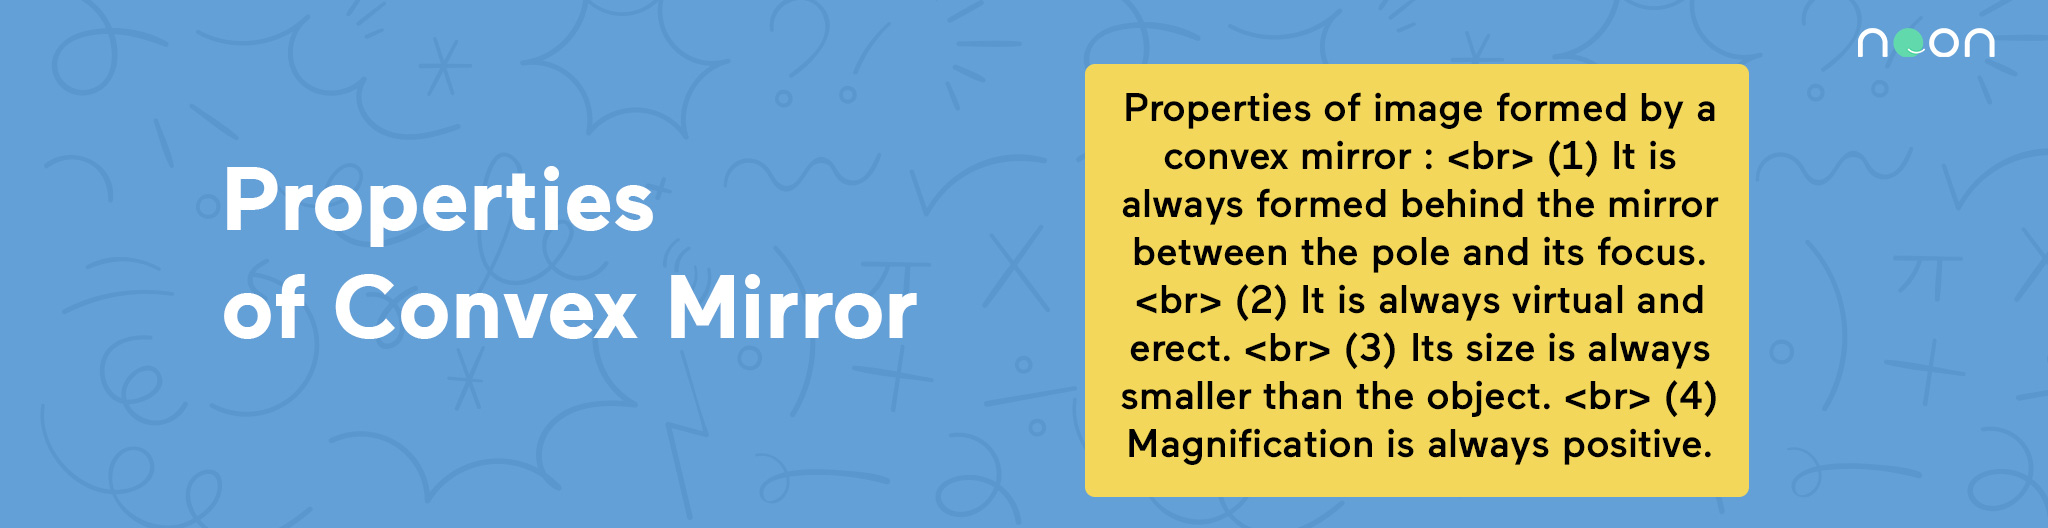 Properties of Convex Mirror